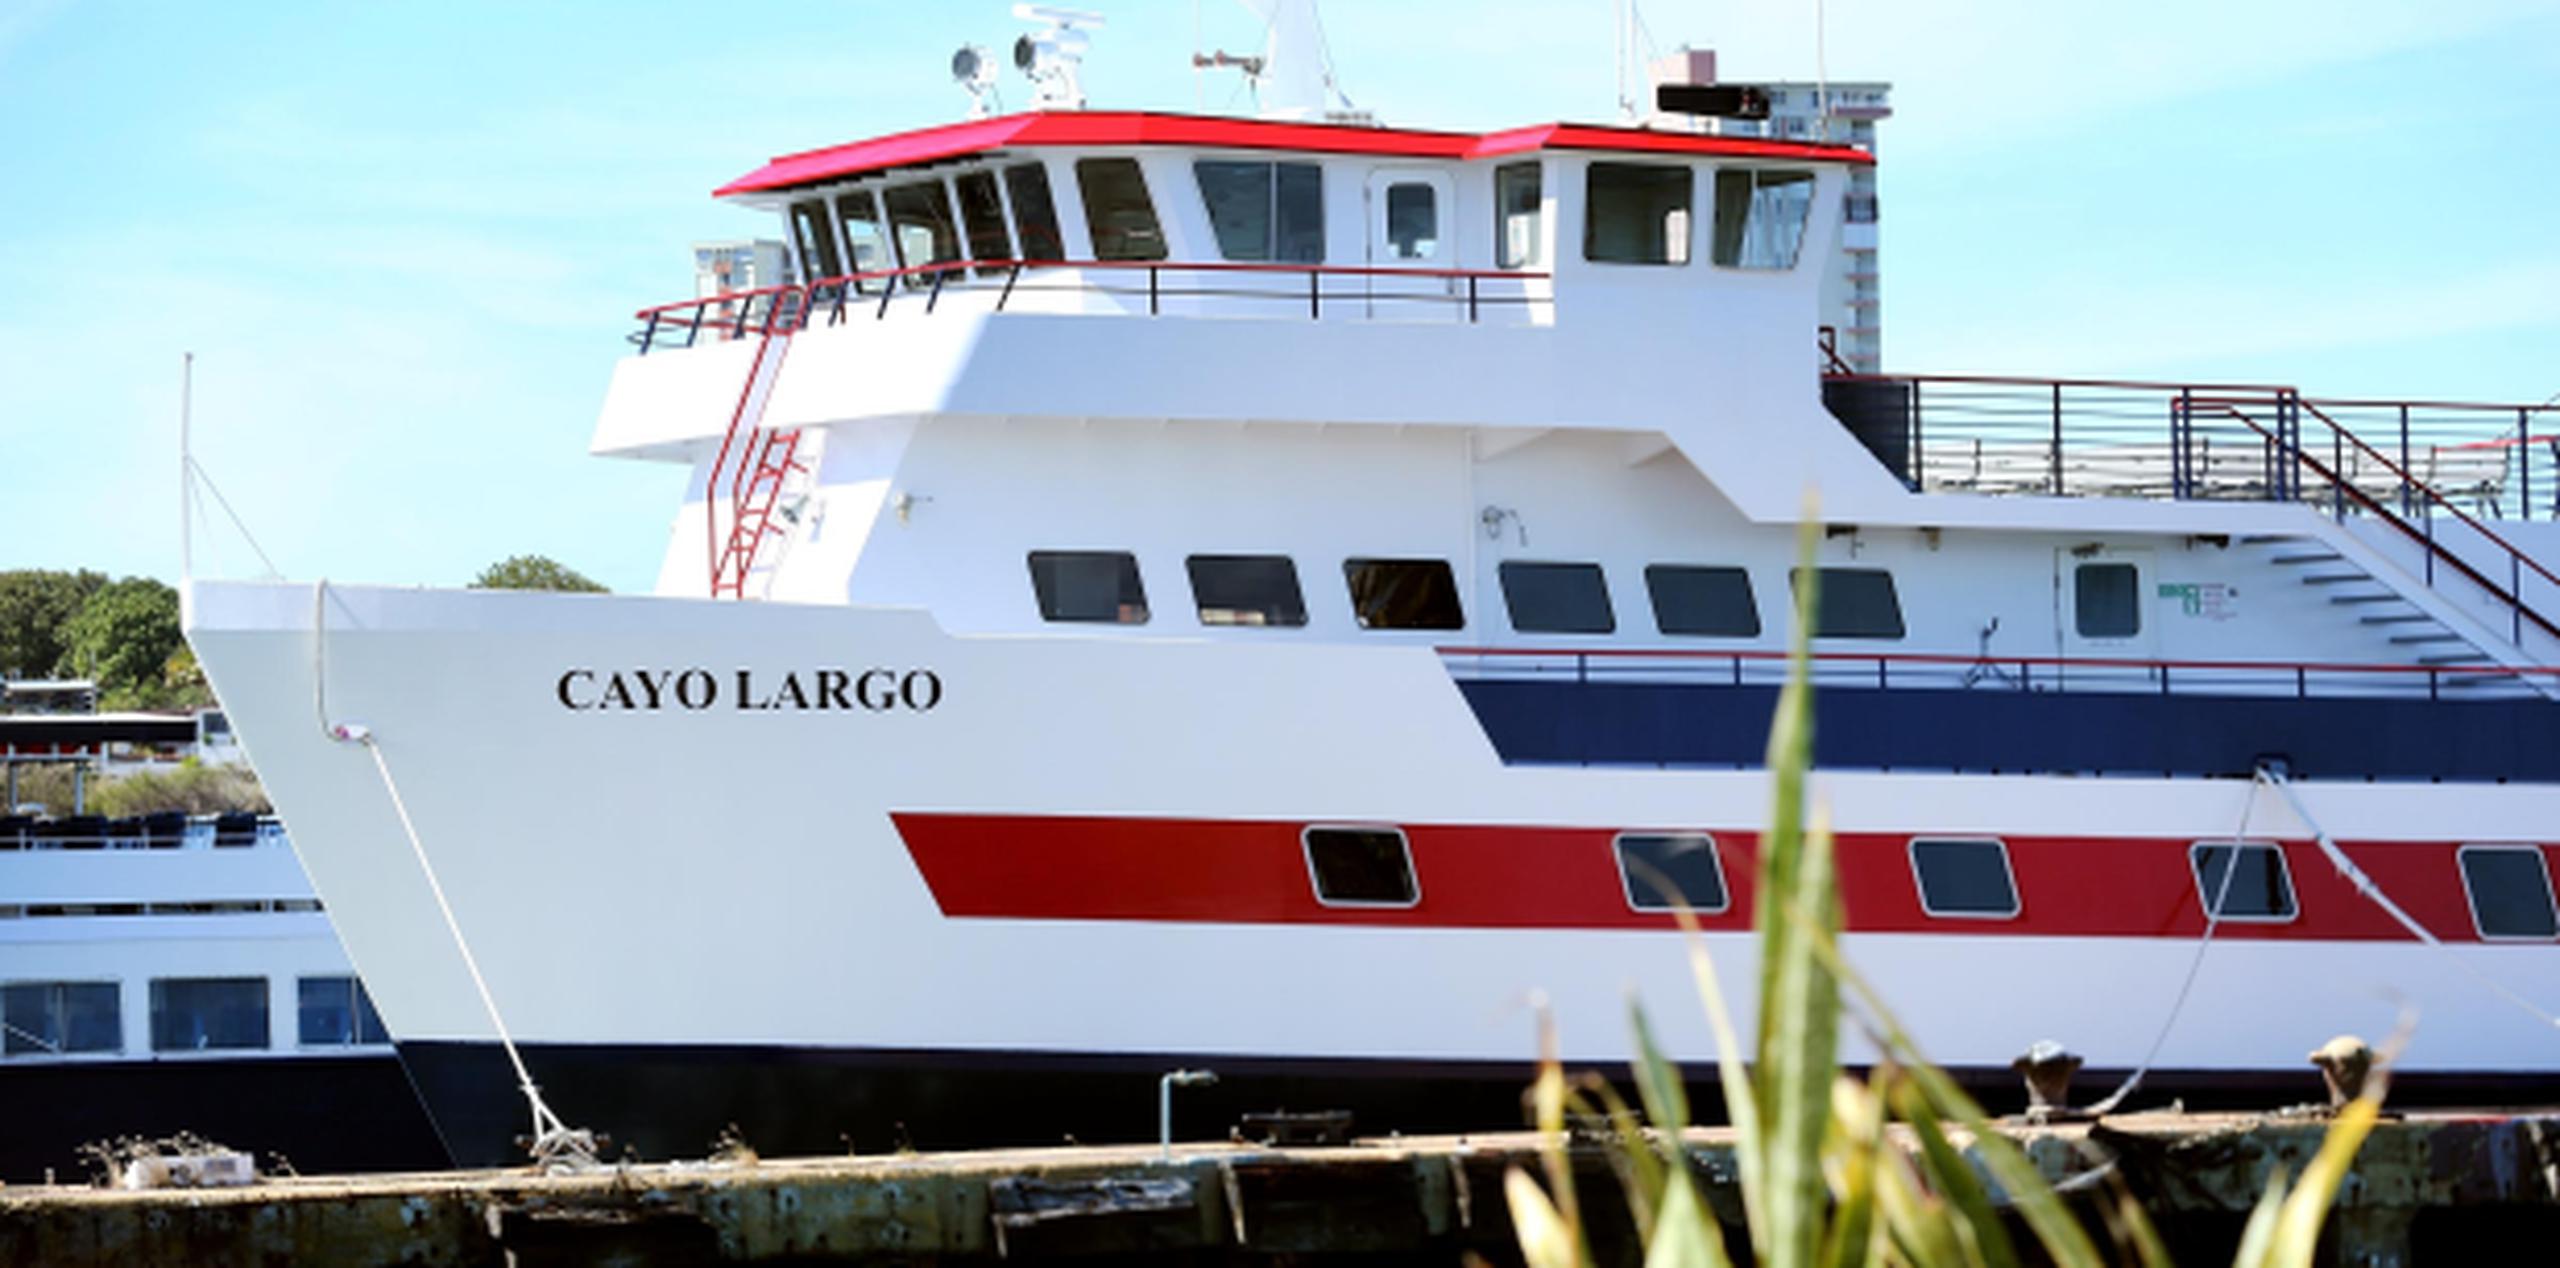 La Cayo Largo es la única de cuatro embarcaciones actualmente operando entre las islas municipio y el resto de Puerto Rico. (Archivo)